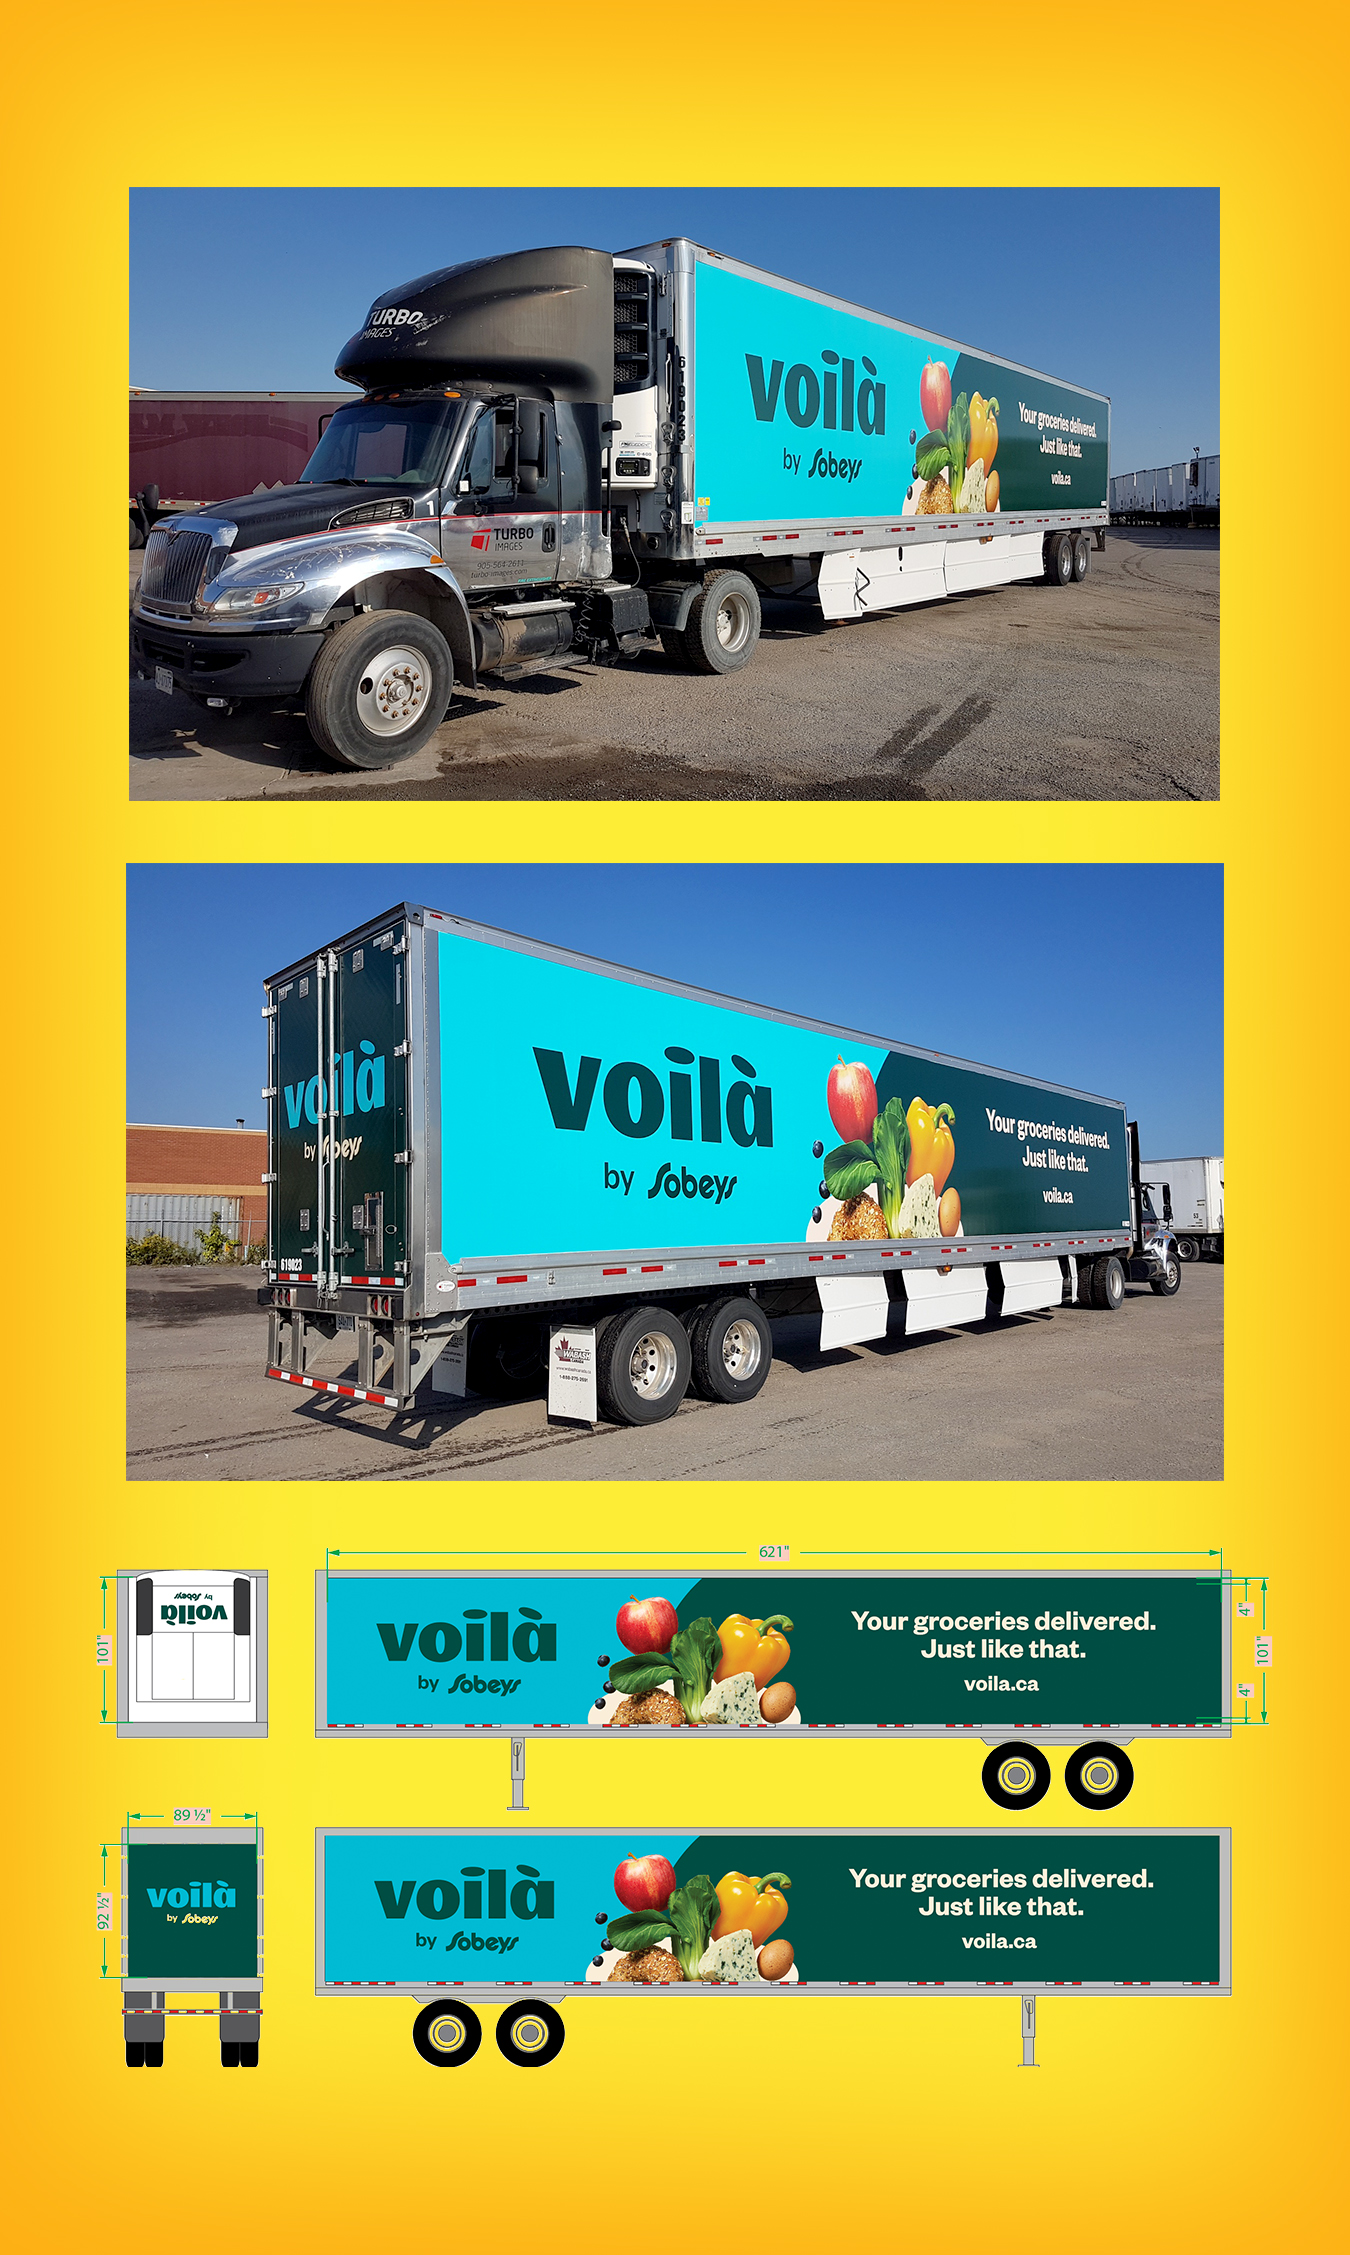 Voilà by Sobeys Truck Design